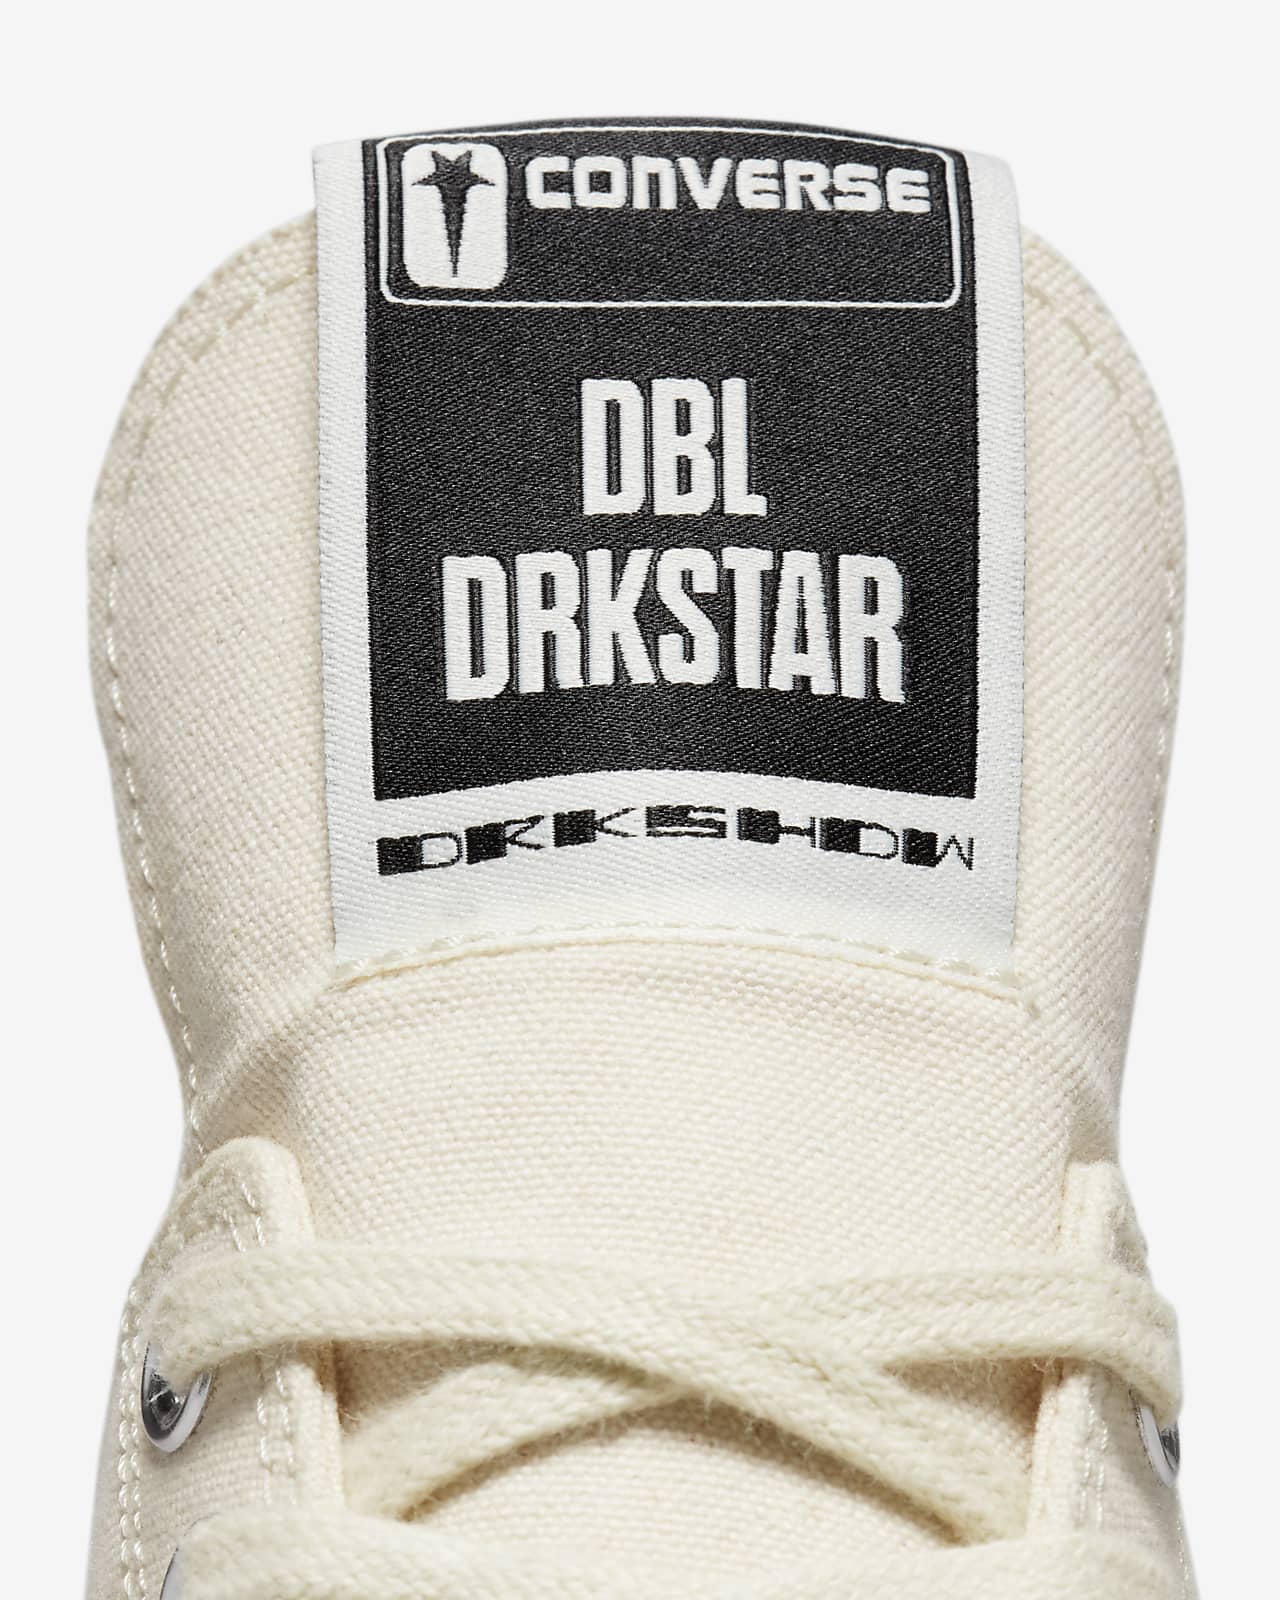 CONVERSE x DRKSHDW Shoes